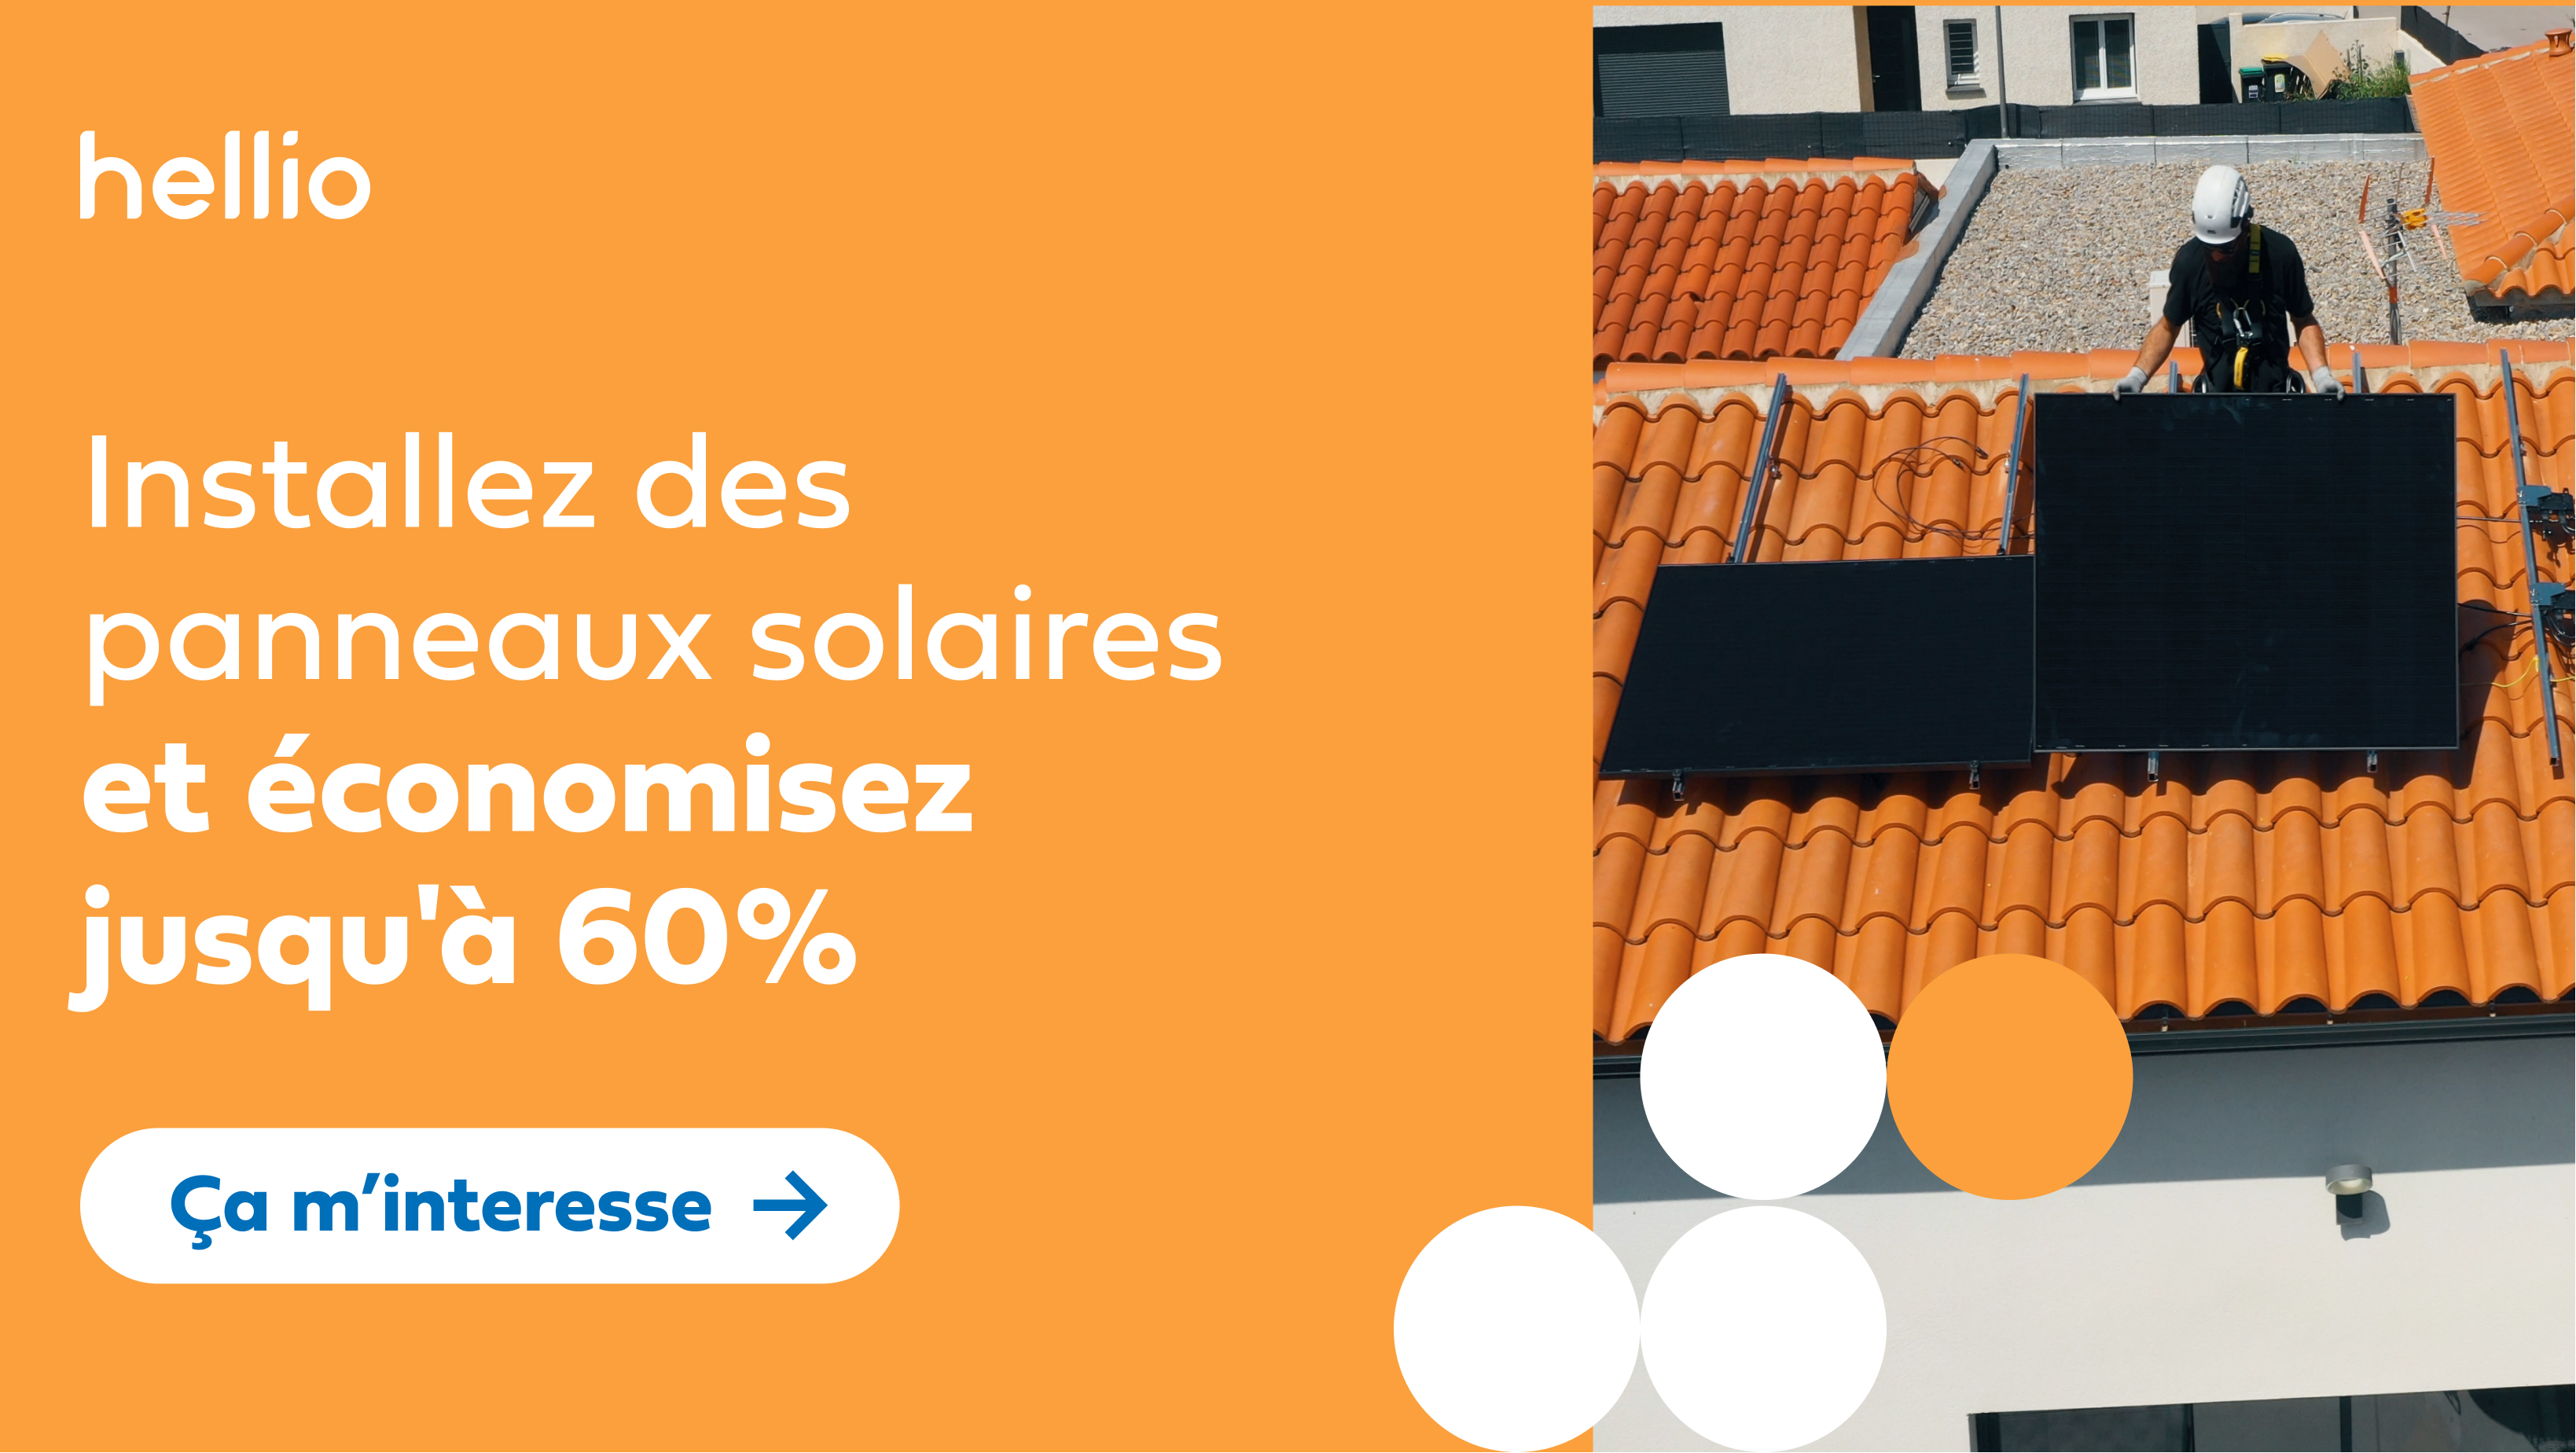 Marque : panneaux photovoltaïques - Blog travaux primesenergie.fr -  PrimesEnergie.fr